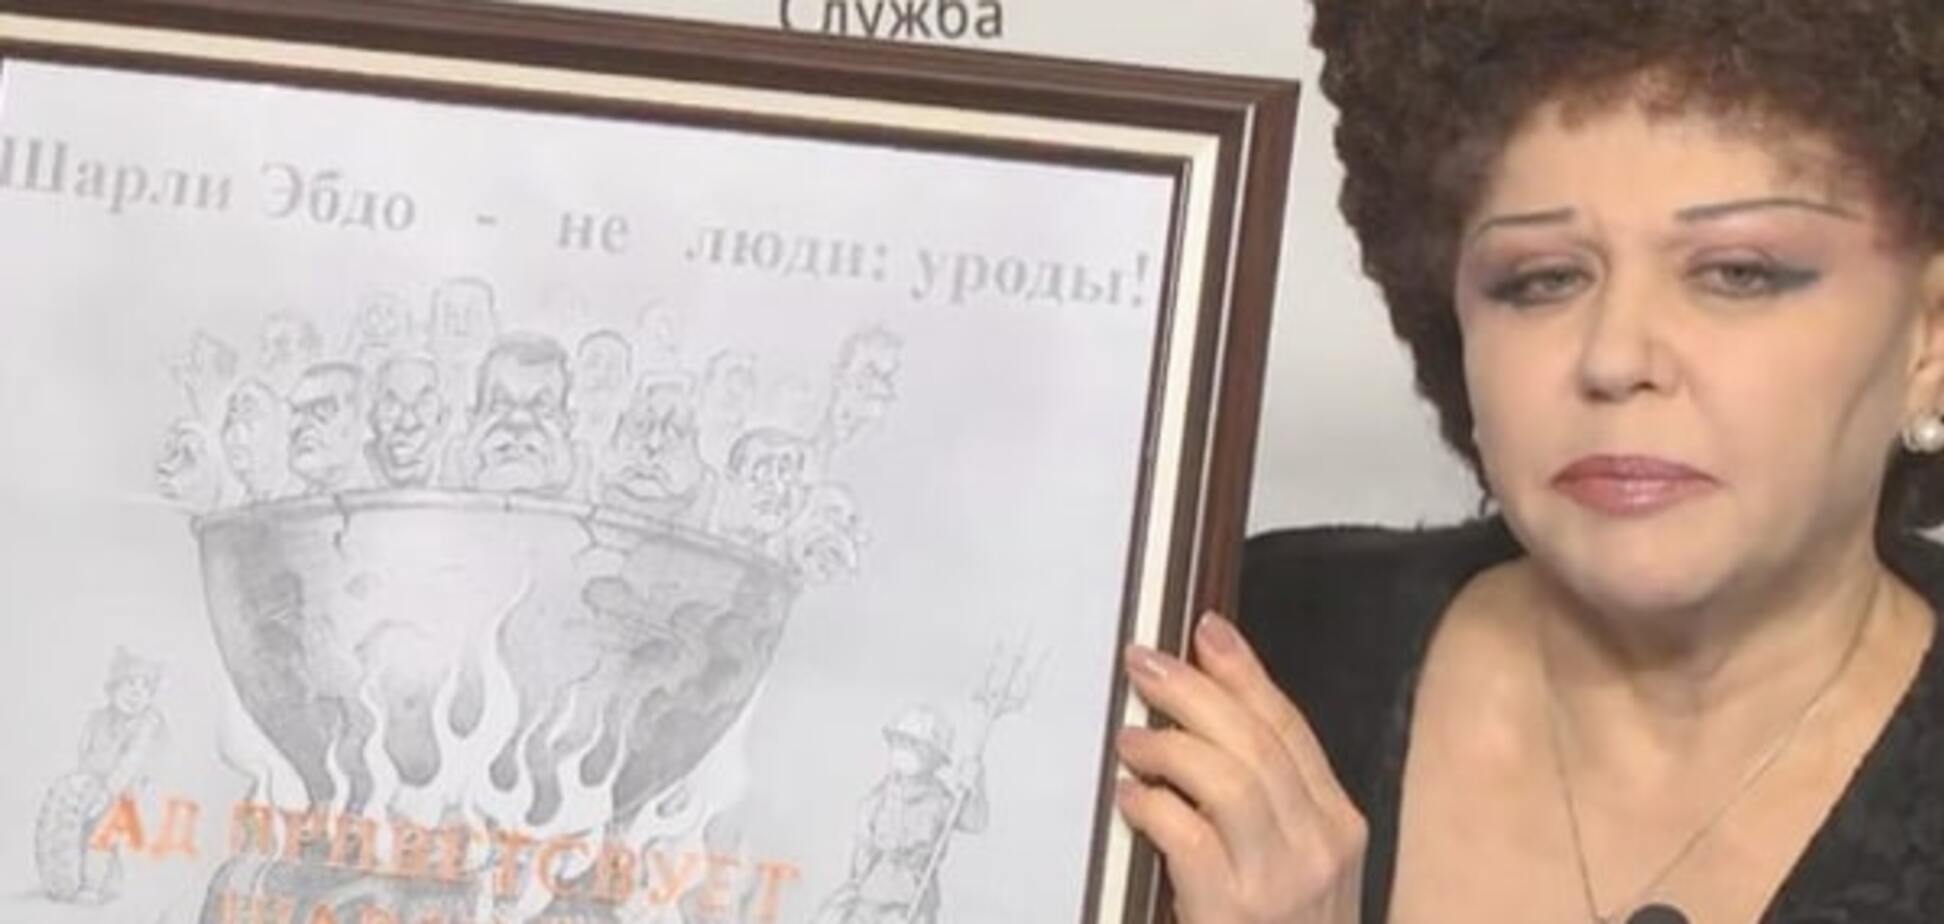 'Месть' Charlie Hebdo: украинский художник ответил сенатору РФ на плагиат